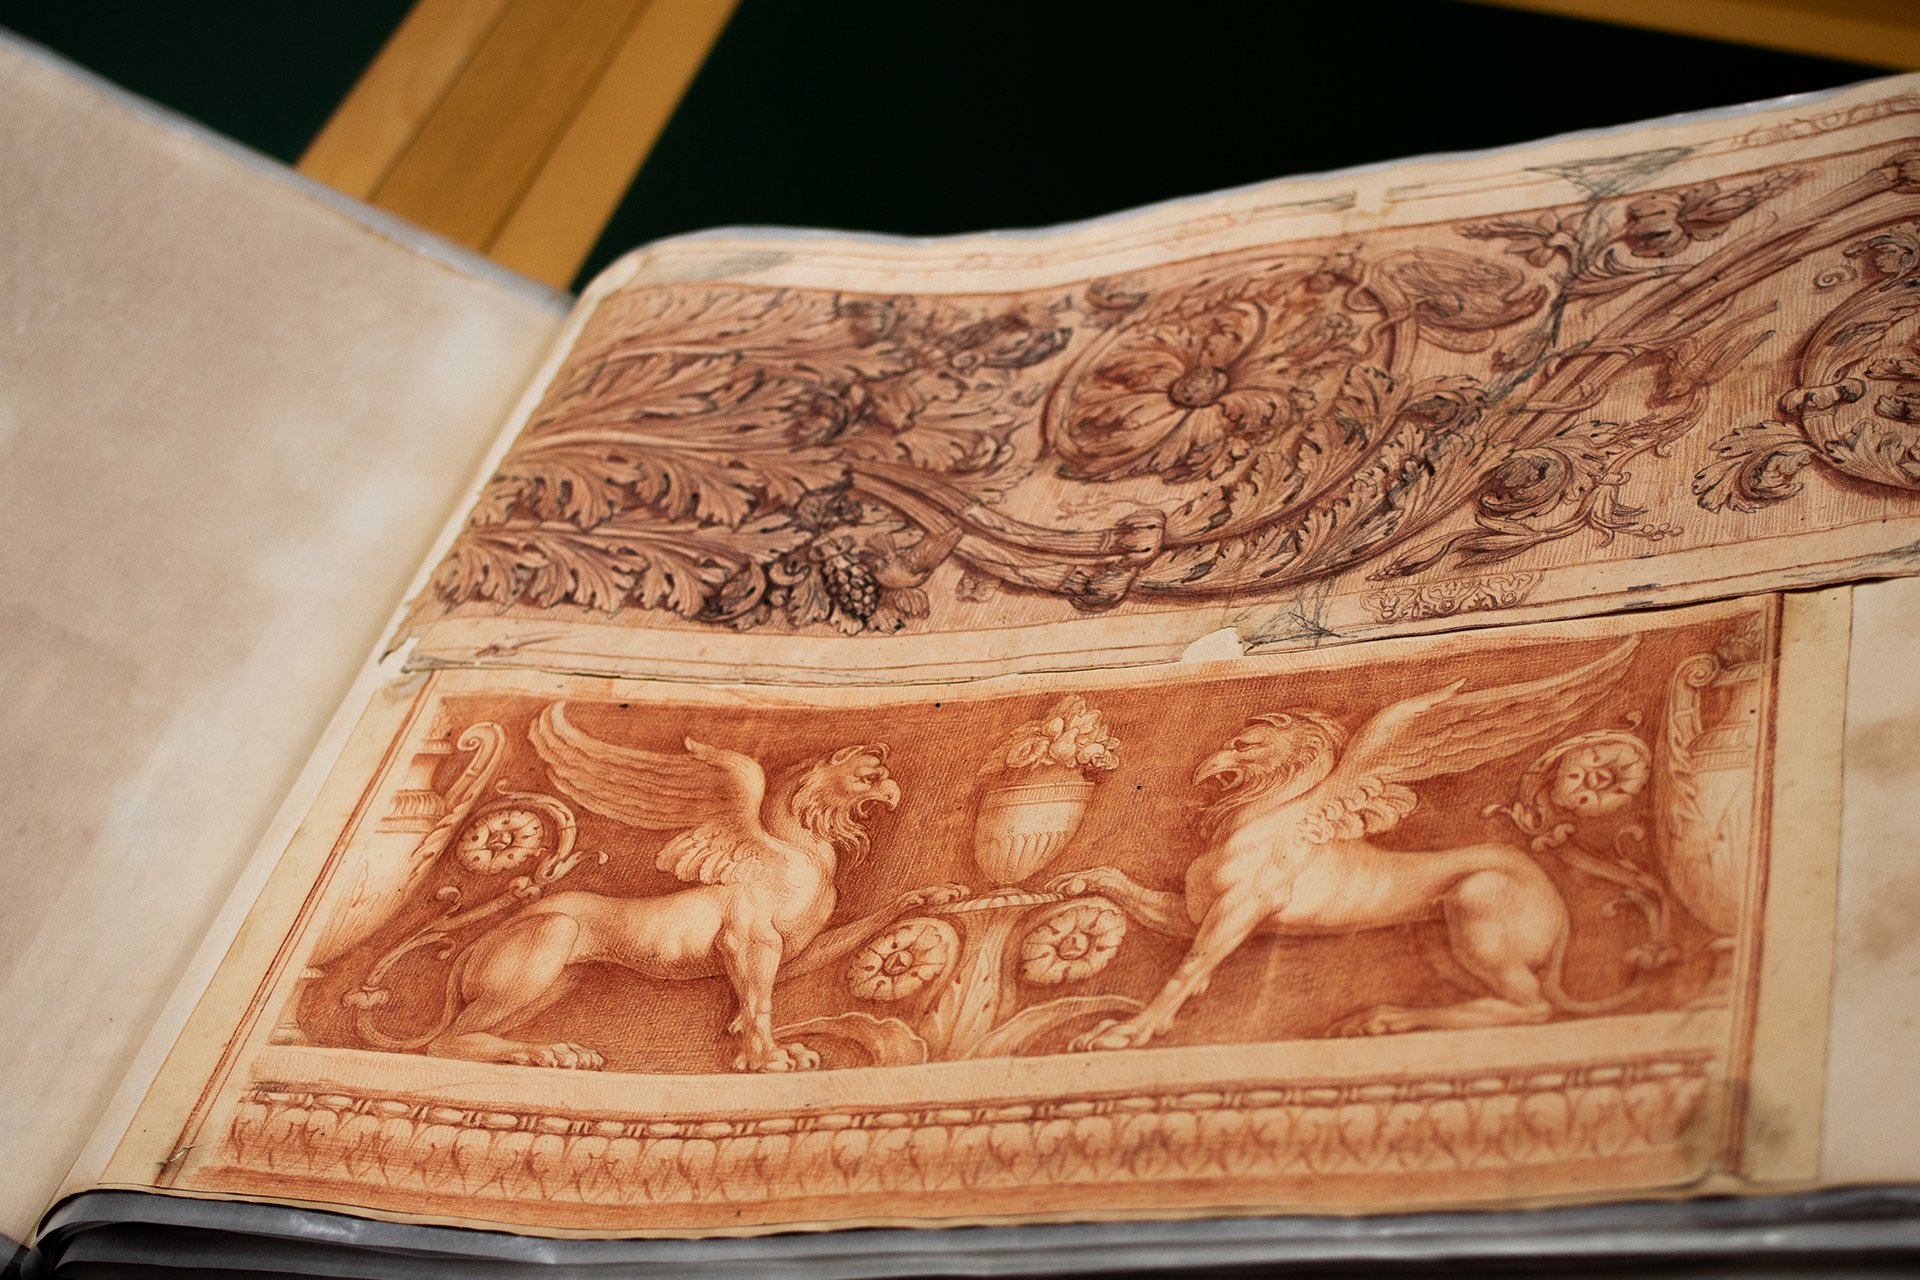 Foto des aufgeschlagenen Klebeband 1. Die aufgeschlagene Seite zeigt Blatt 10, das sowohl eine Zeichnung von zwei stolzen Greifen als auch eine Zeichnung vom Wellenrankenrelief in der Villa Medici zeigt.